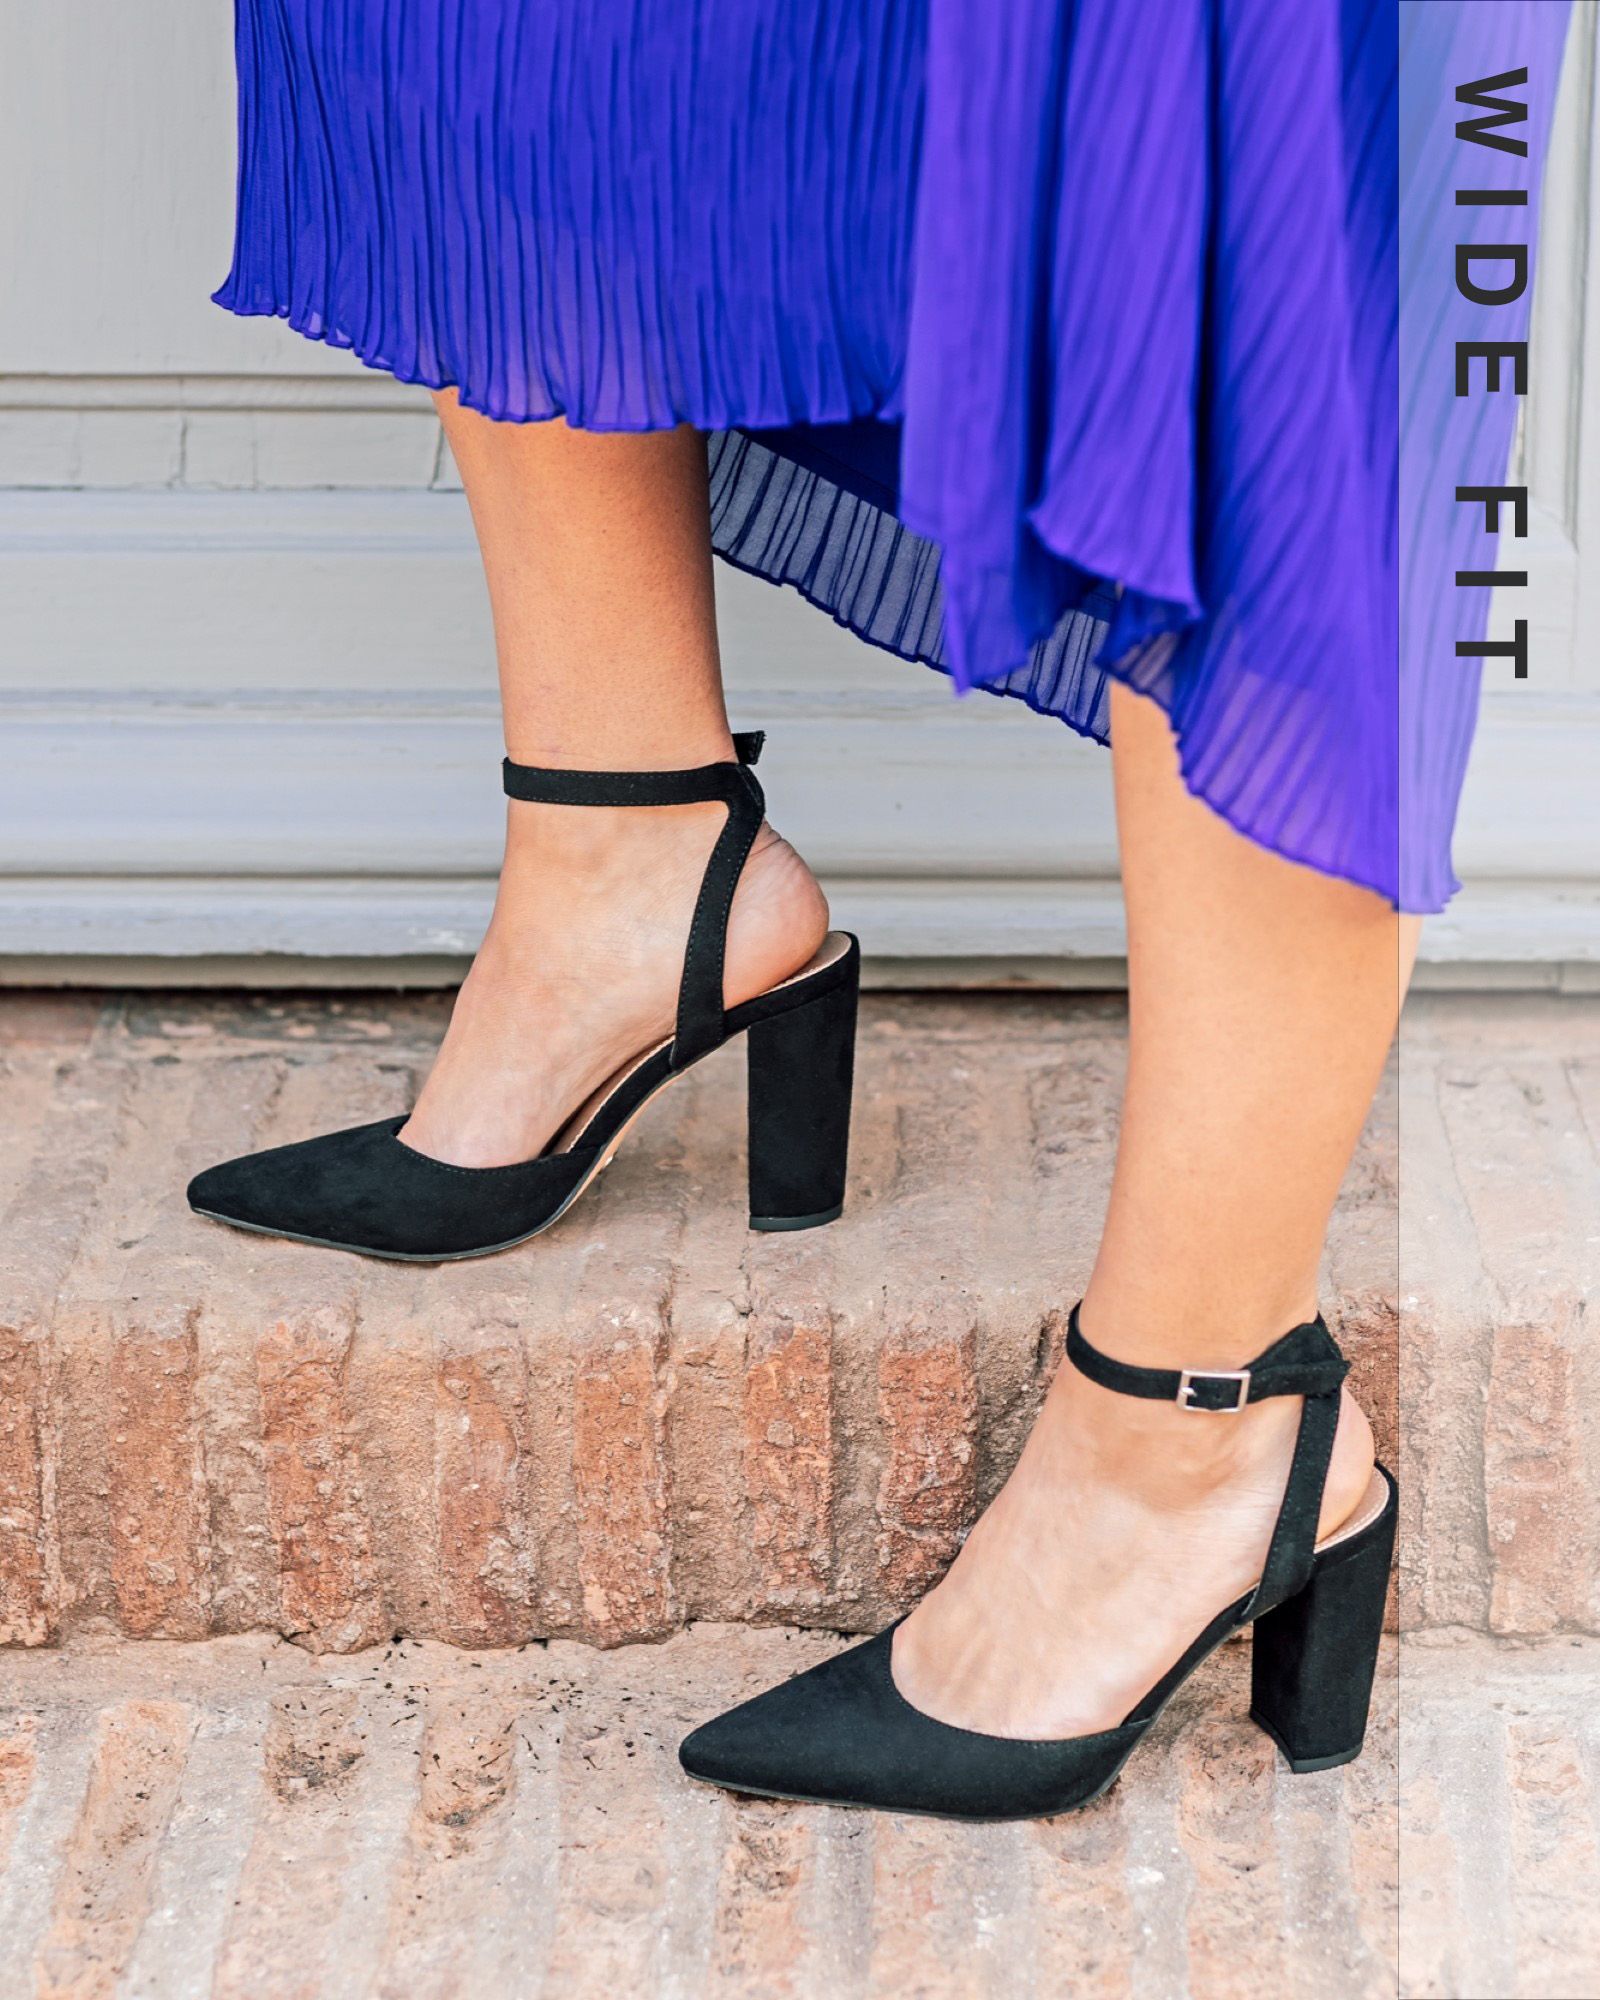 HANNAH Chunky Platform Heels - Black Snake | Black heels, Platform heels  chunky, Black platform heels